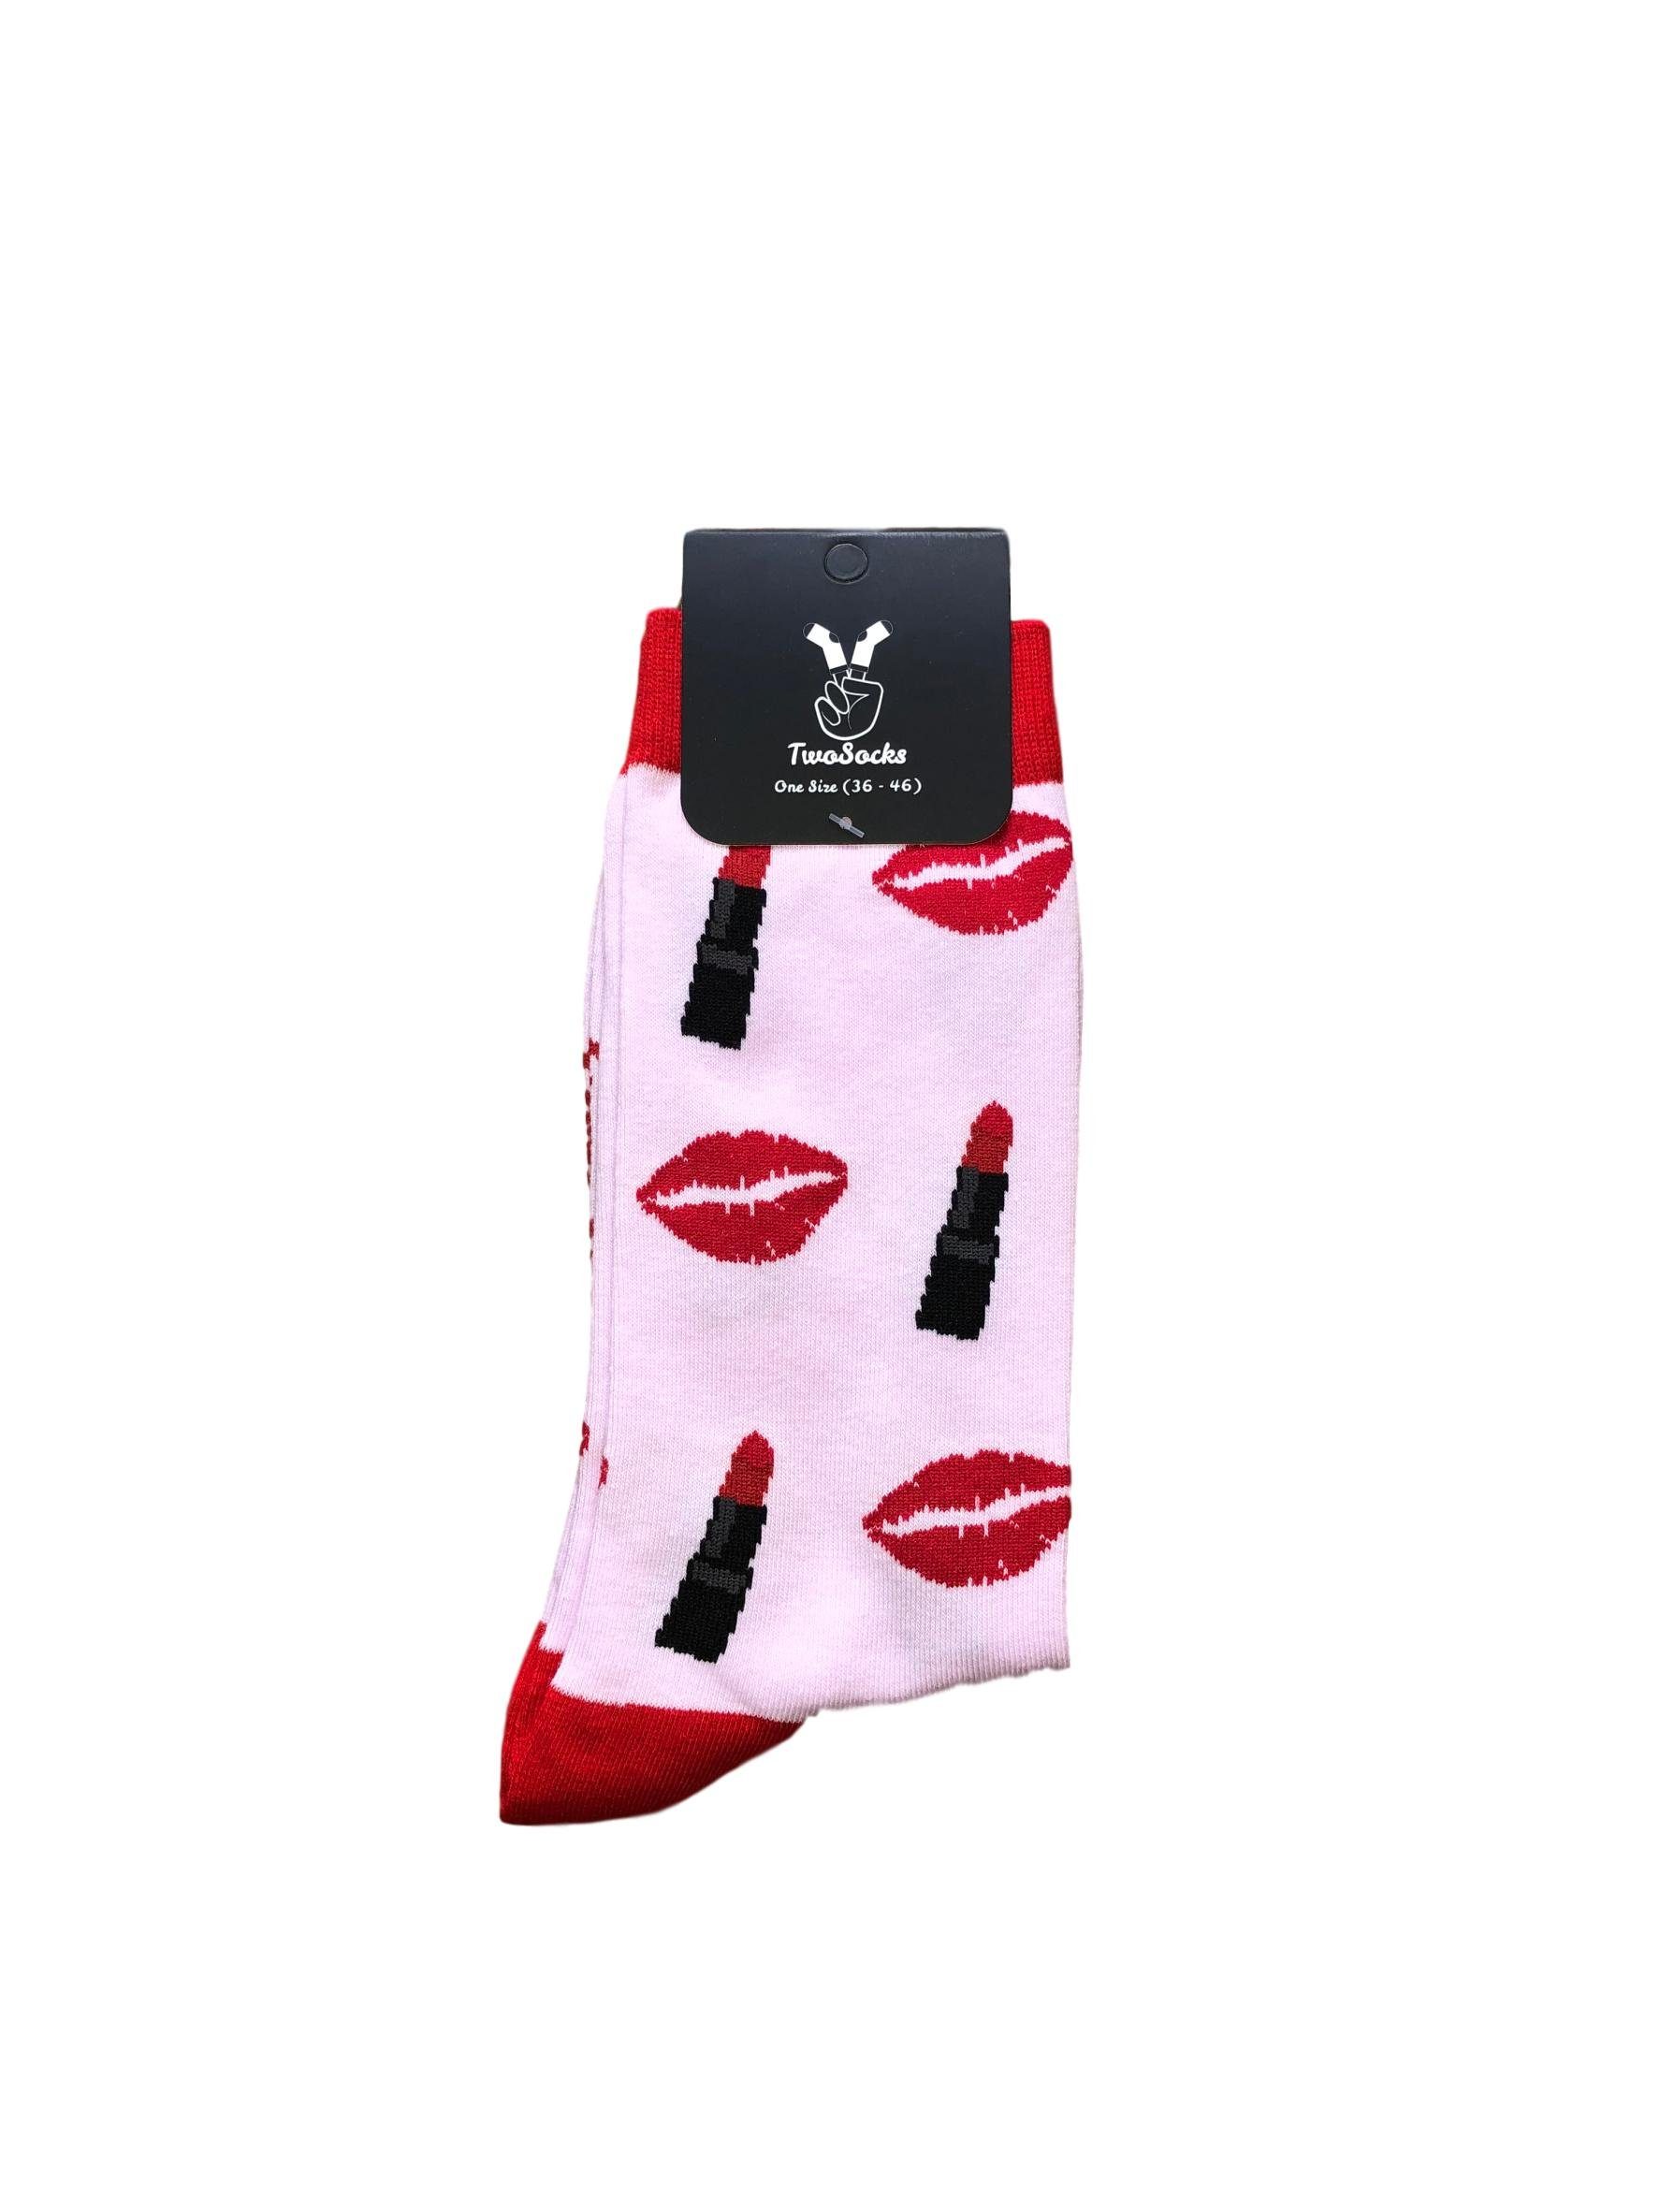 Herren, lustige TwoSocks Freizeitsocken & Einheitsgröße Damen Socken Kuss Socken